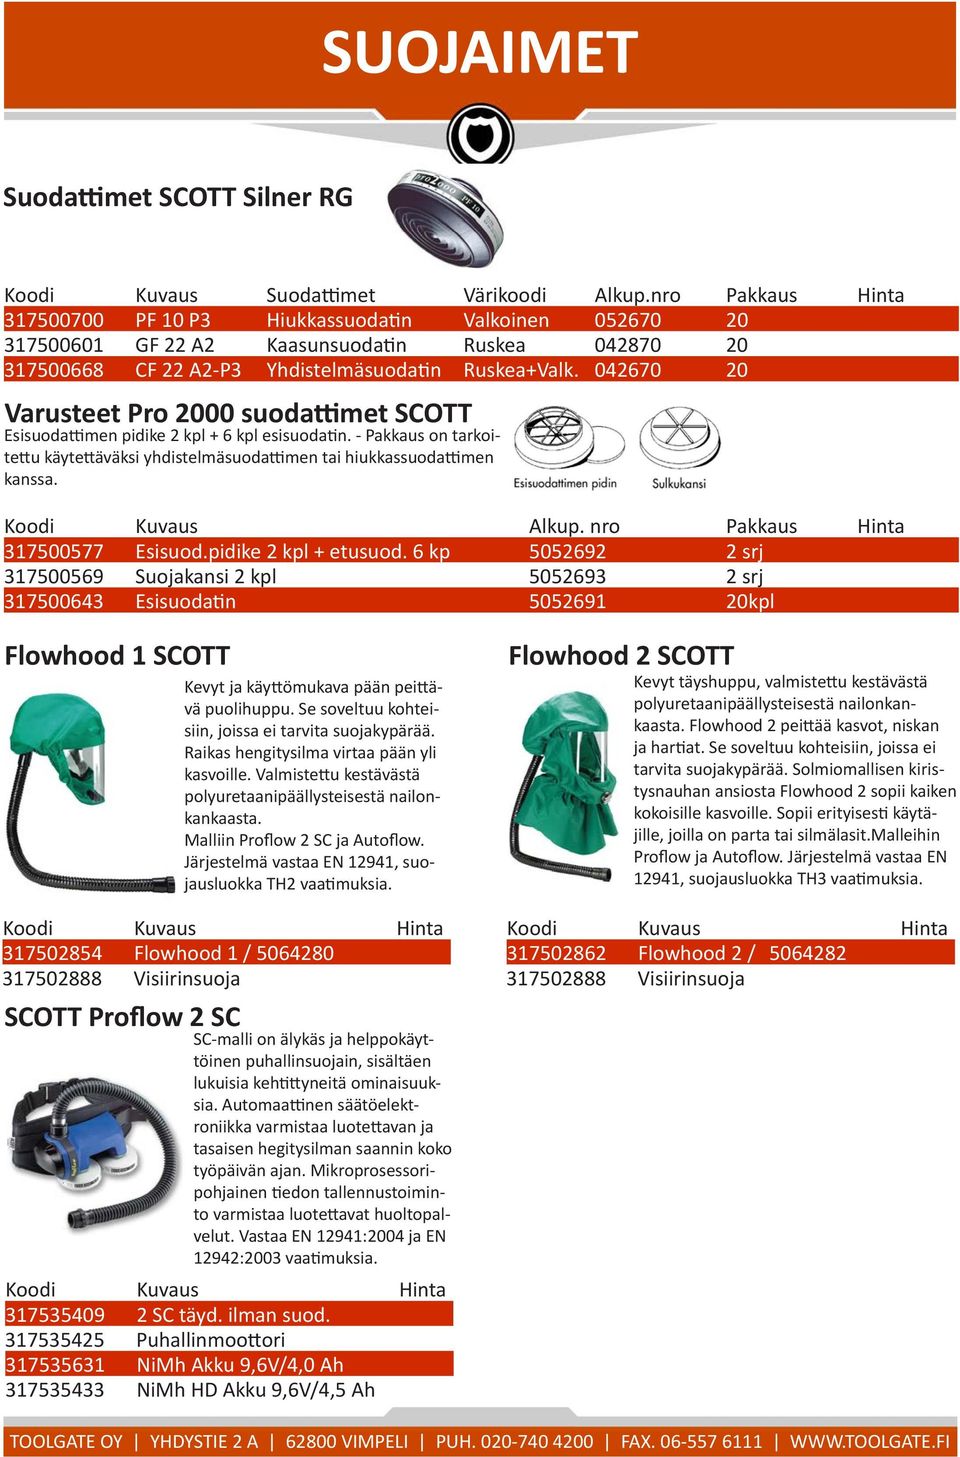 042670 20 Varusteet Pro 2000 suodattimet SCOTT Esisuodattimen pidike 2 kpl + 6 kpl esisuodatin. - Pakkaus on tarkoitettu käytettäväksi yhdistelmäsuodattimen tai hiukkassuodattimen kanssa.